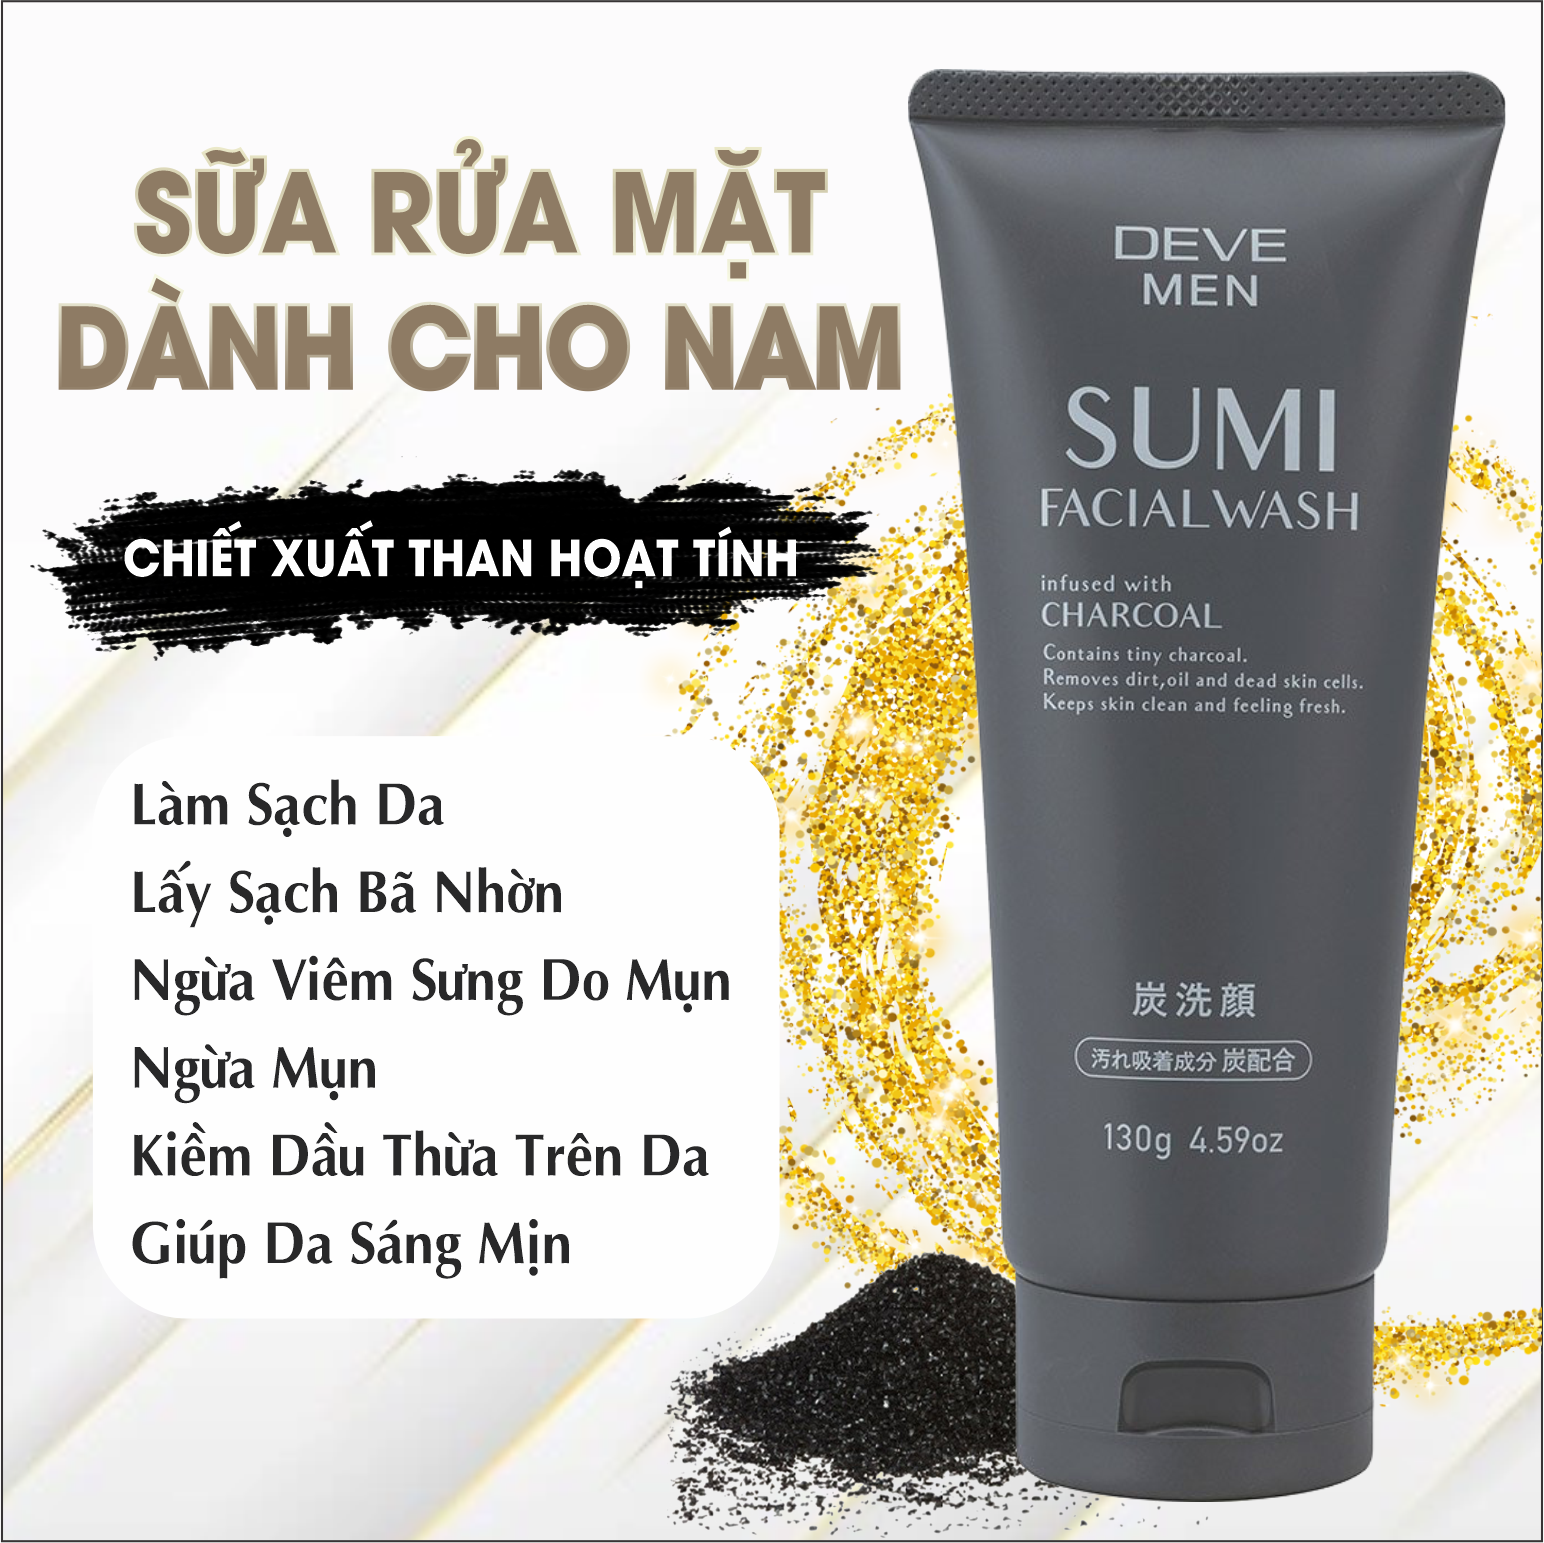 Sữa Rửa Mặt Than Hoạt Tính Deve Men Sumi Facial Wash Dành Cho Nam (Tuýp 130g)